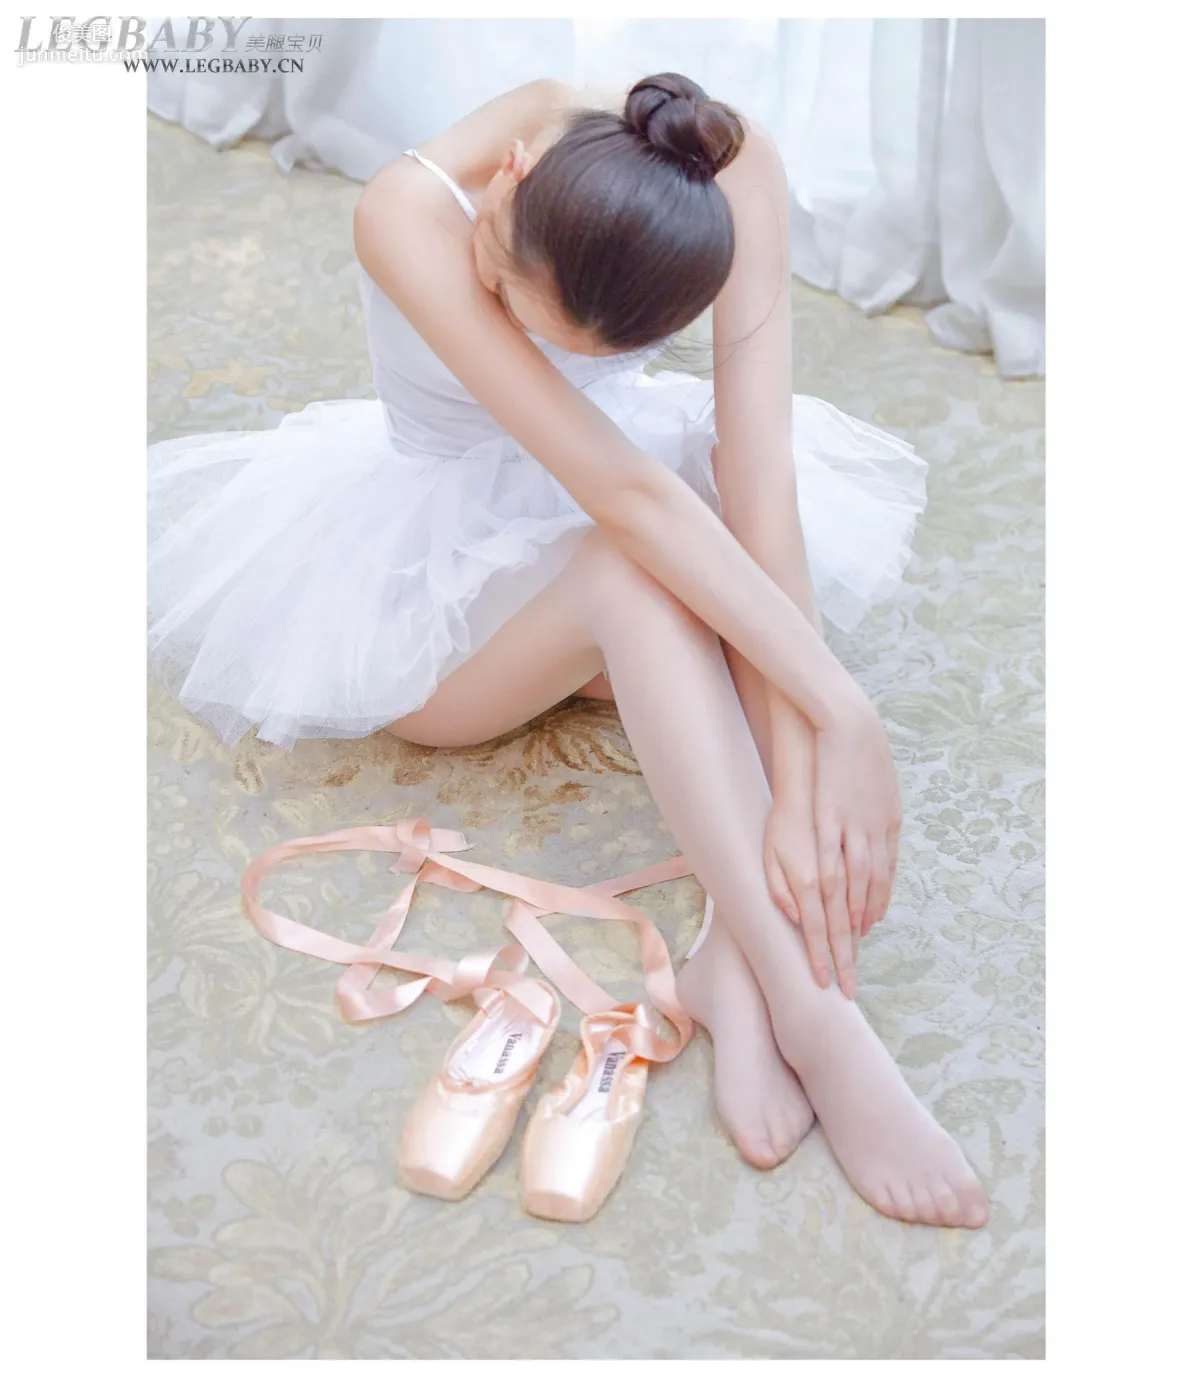 潇潇《芭蕾女孩》 [Legbaby美腿宝贝] V027 写真集1